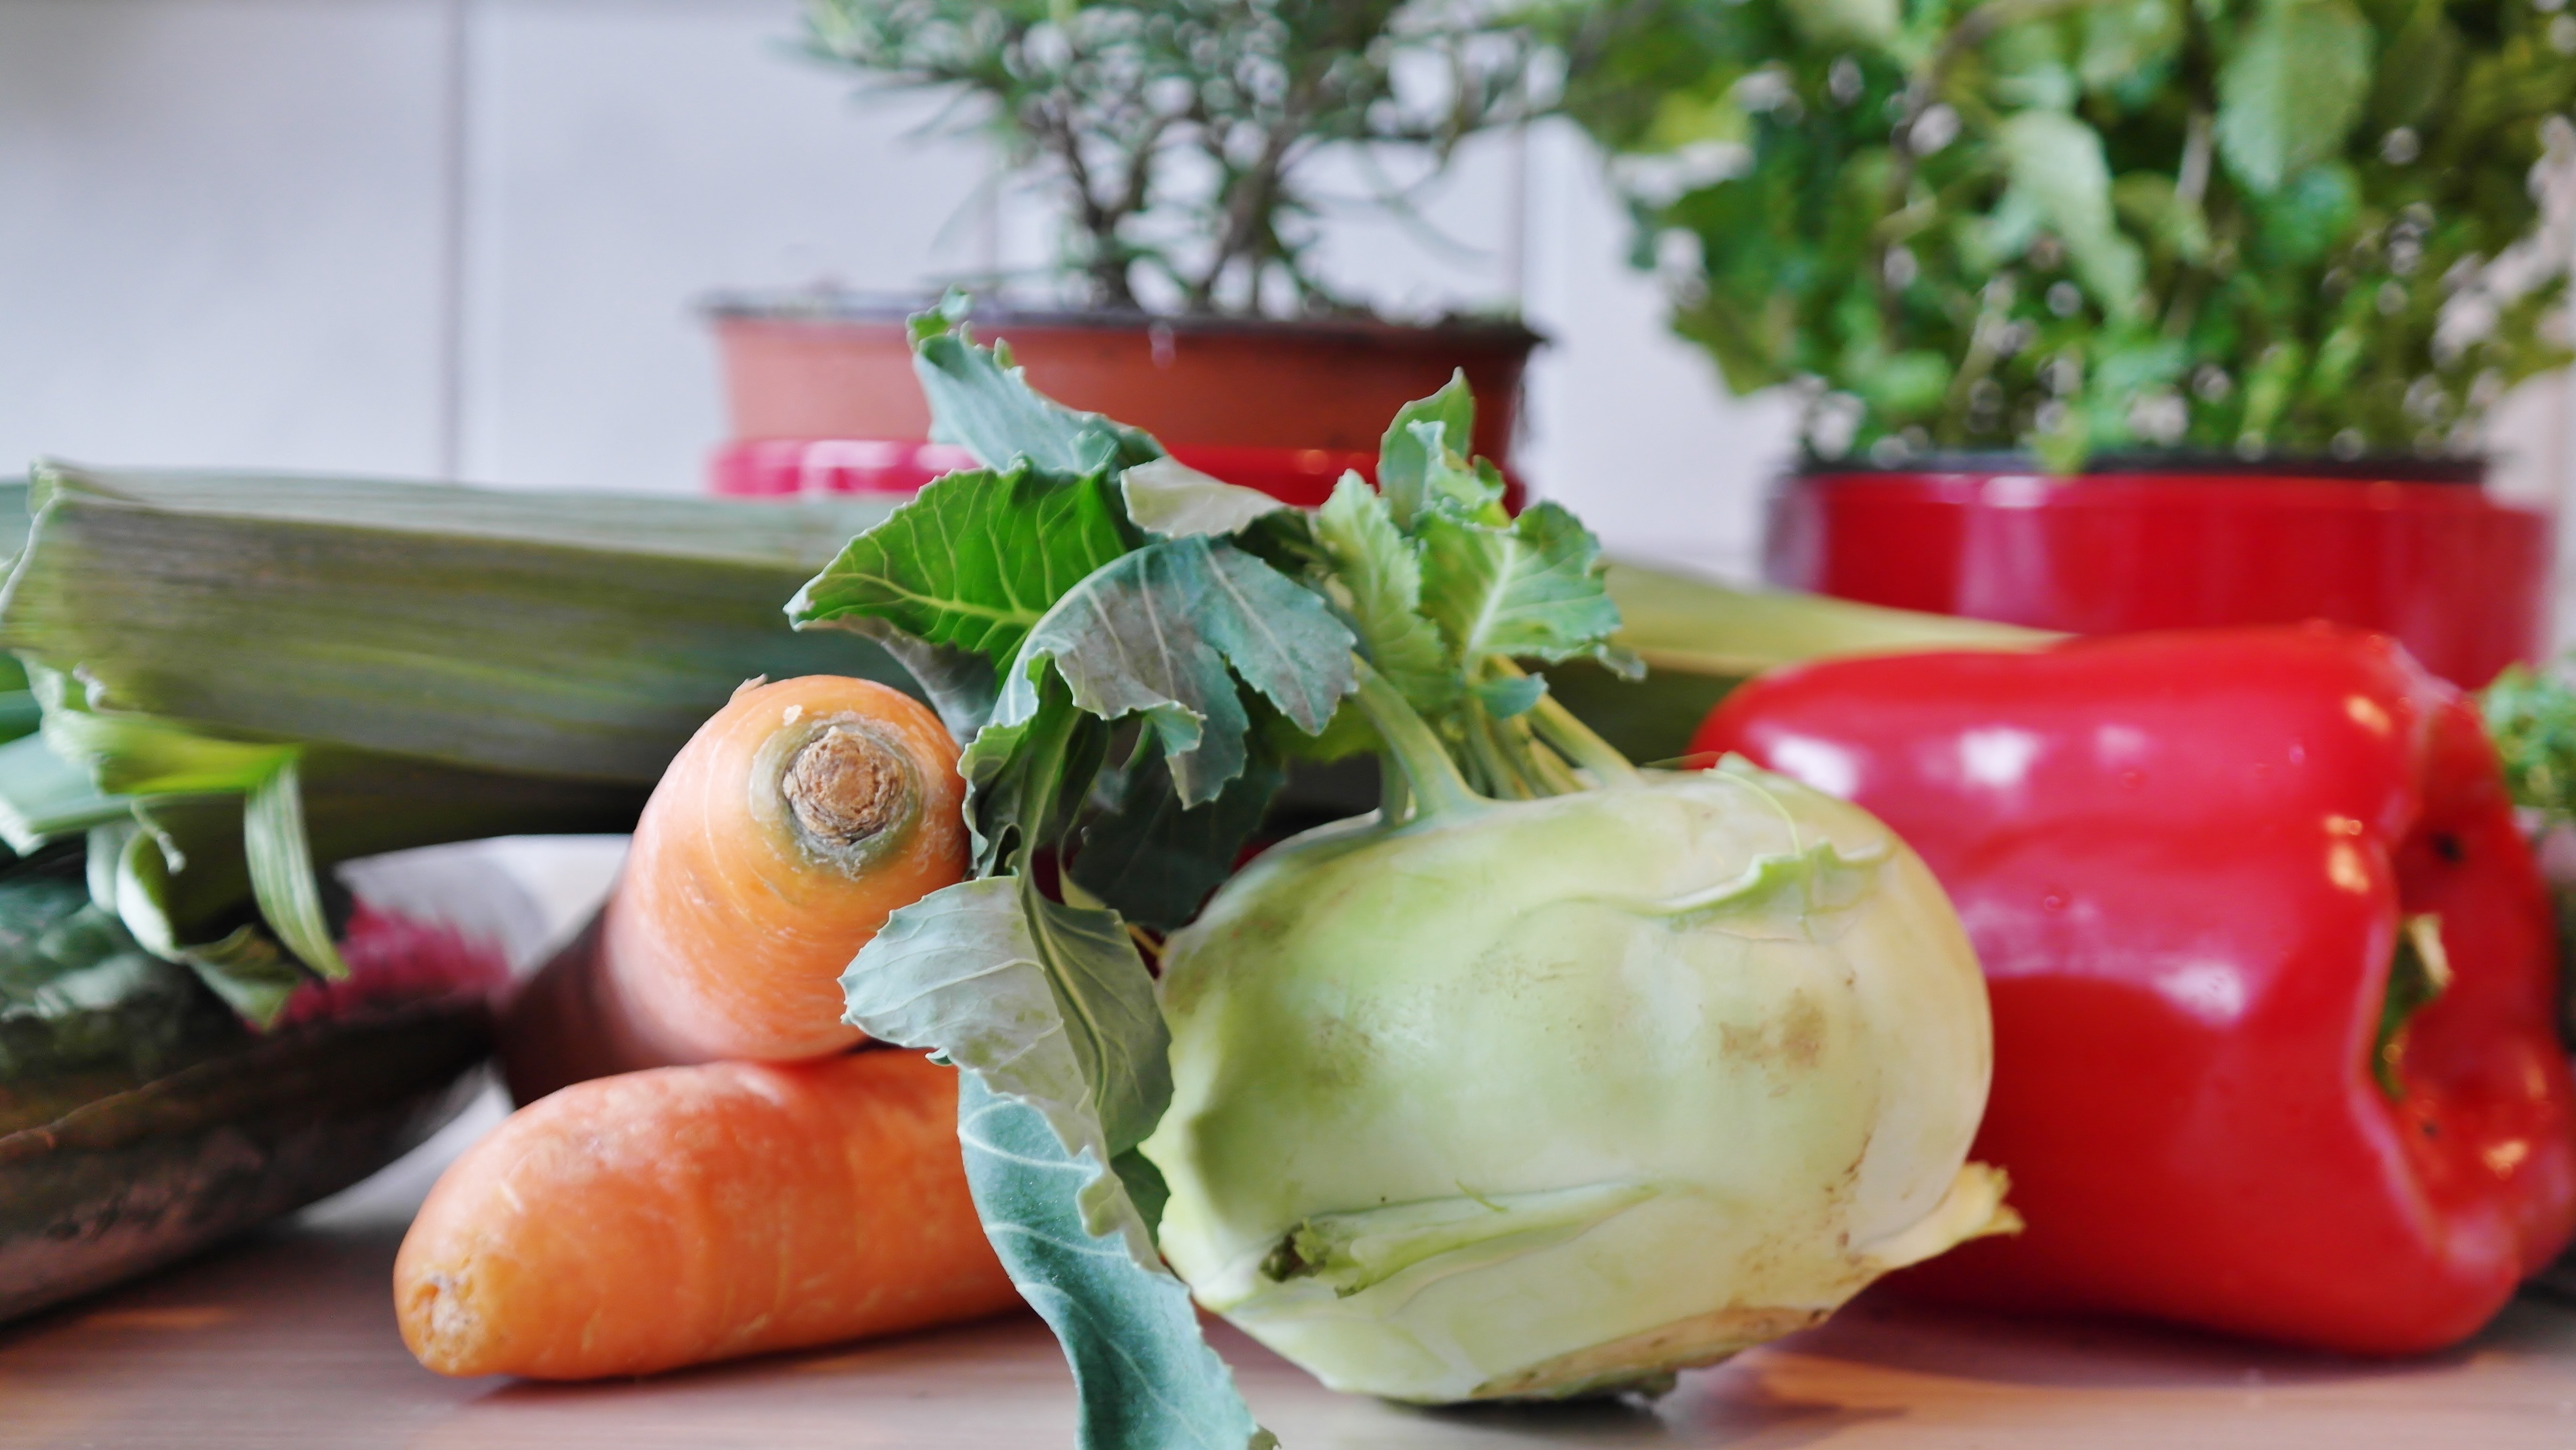 Paprika, Plant, Vegetables, Carrots, vegetable, food and drink